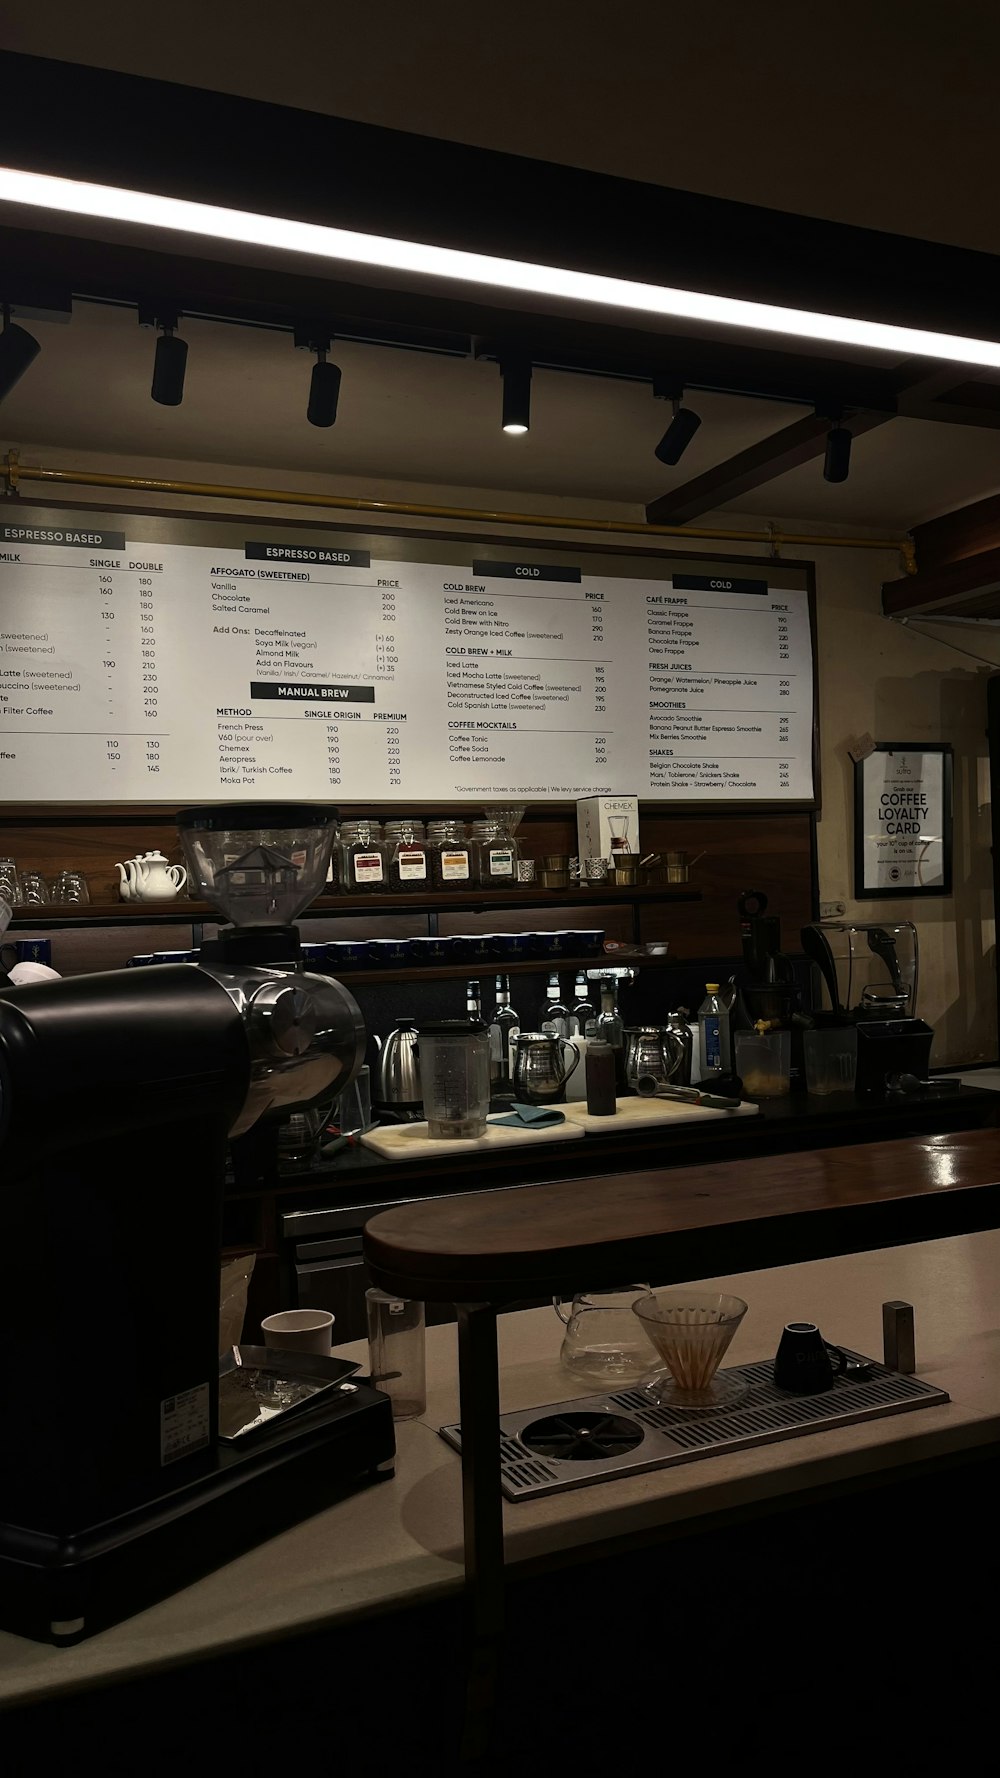 Una cafetería con un menú en la pared